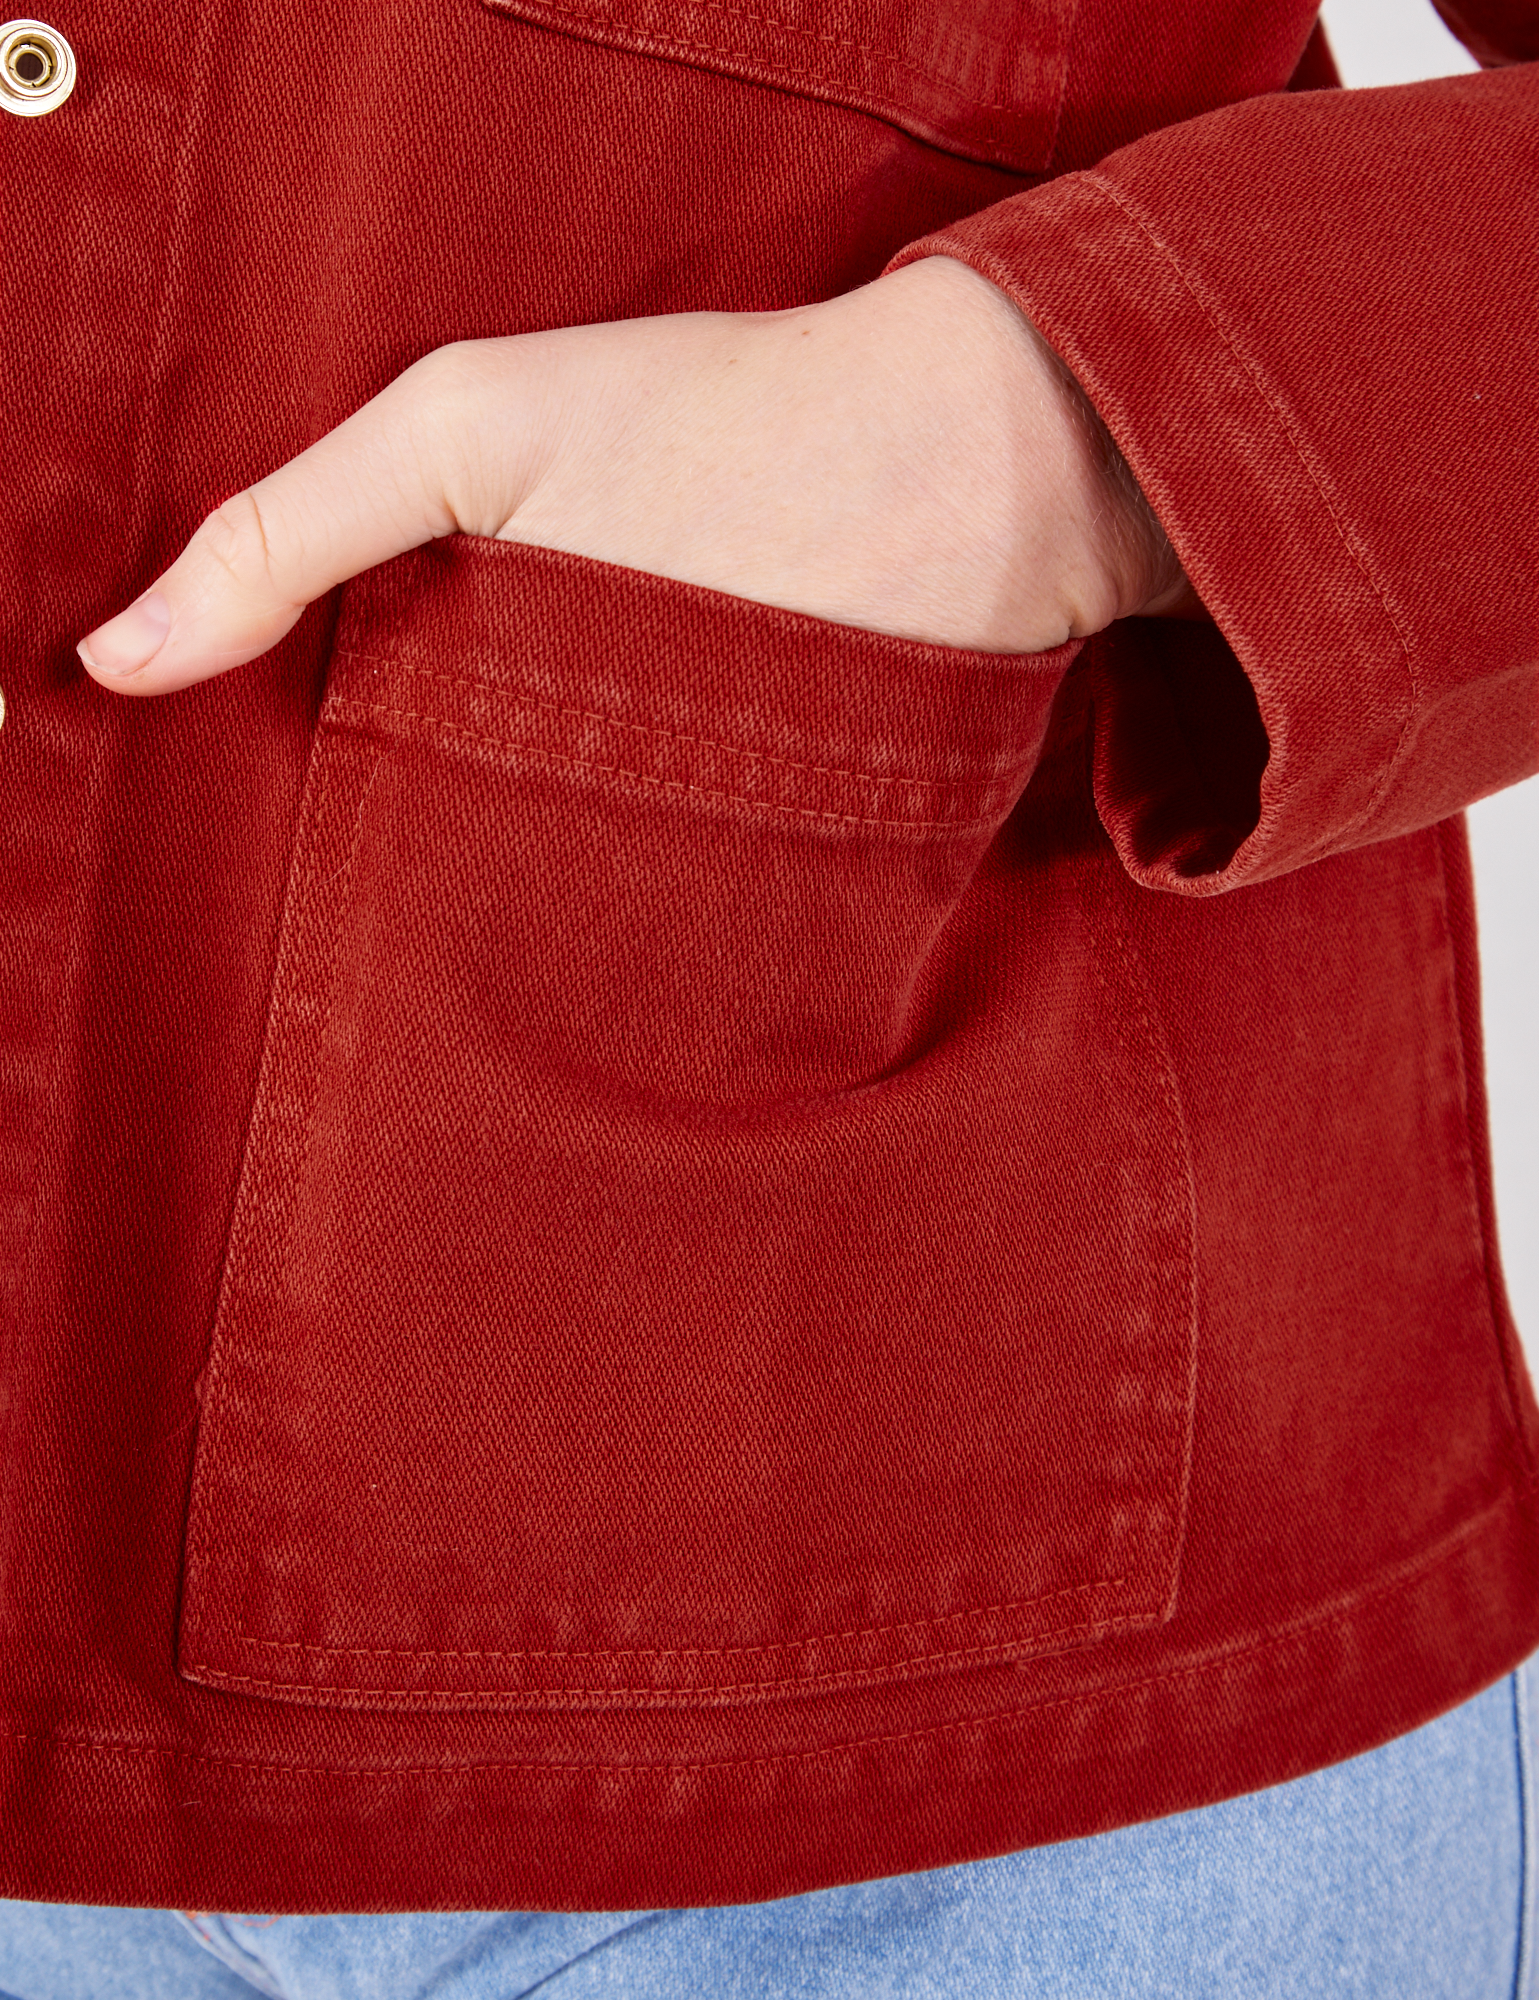 Denim Work Jacket in Paprika hand in front bottom pocket close up